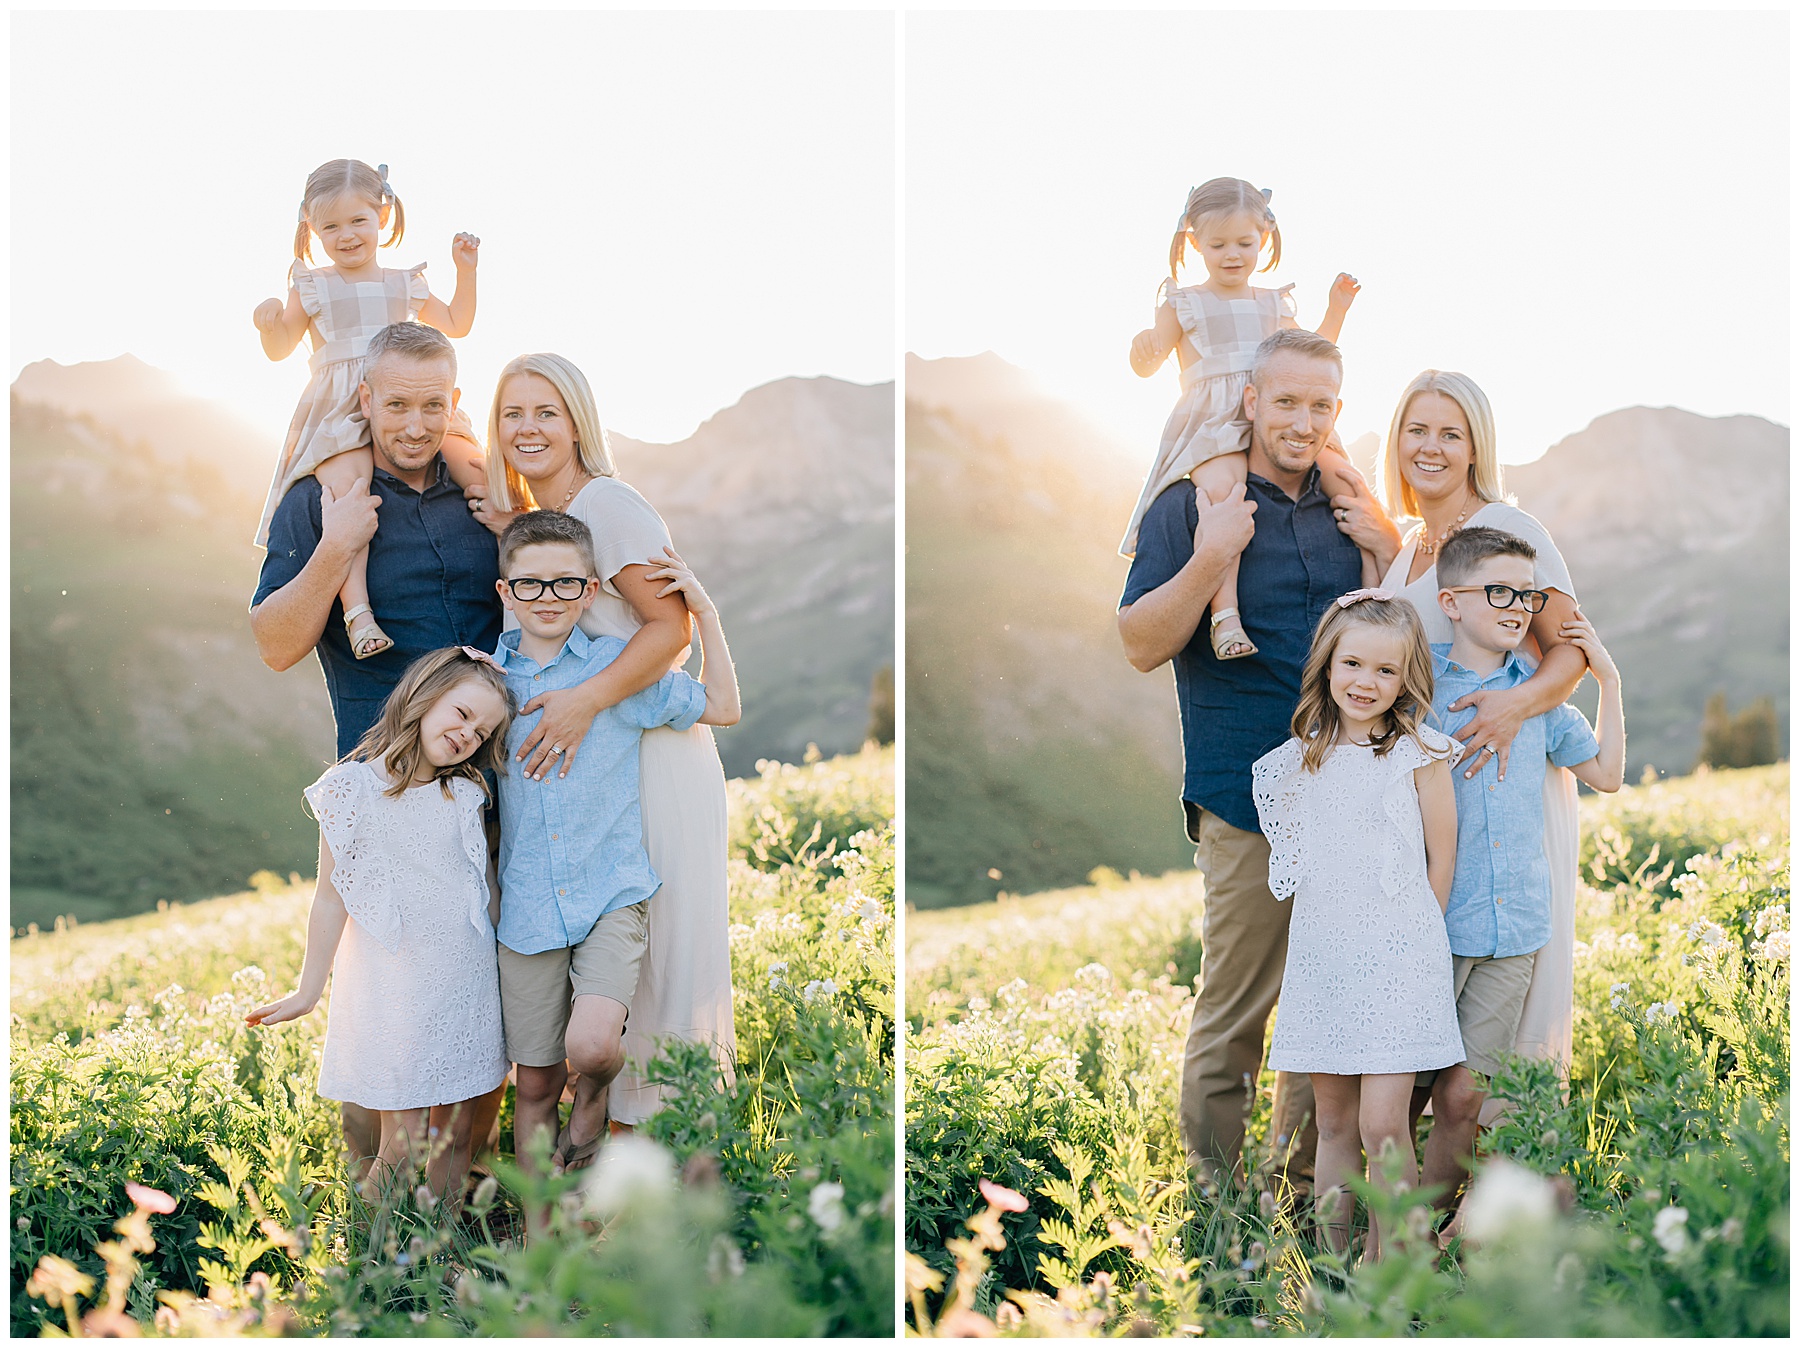 The Olsen Family | Albion Basin, UT | Utah Family Photographer